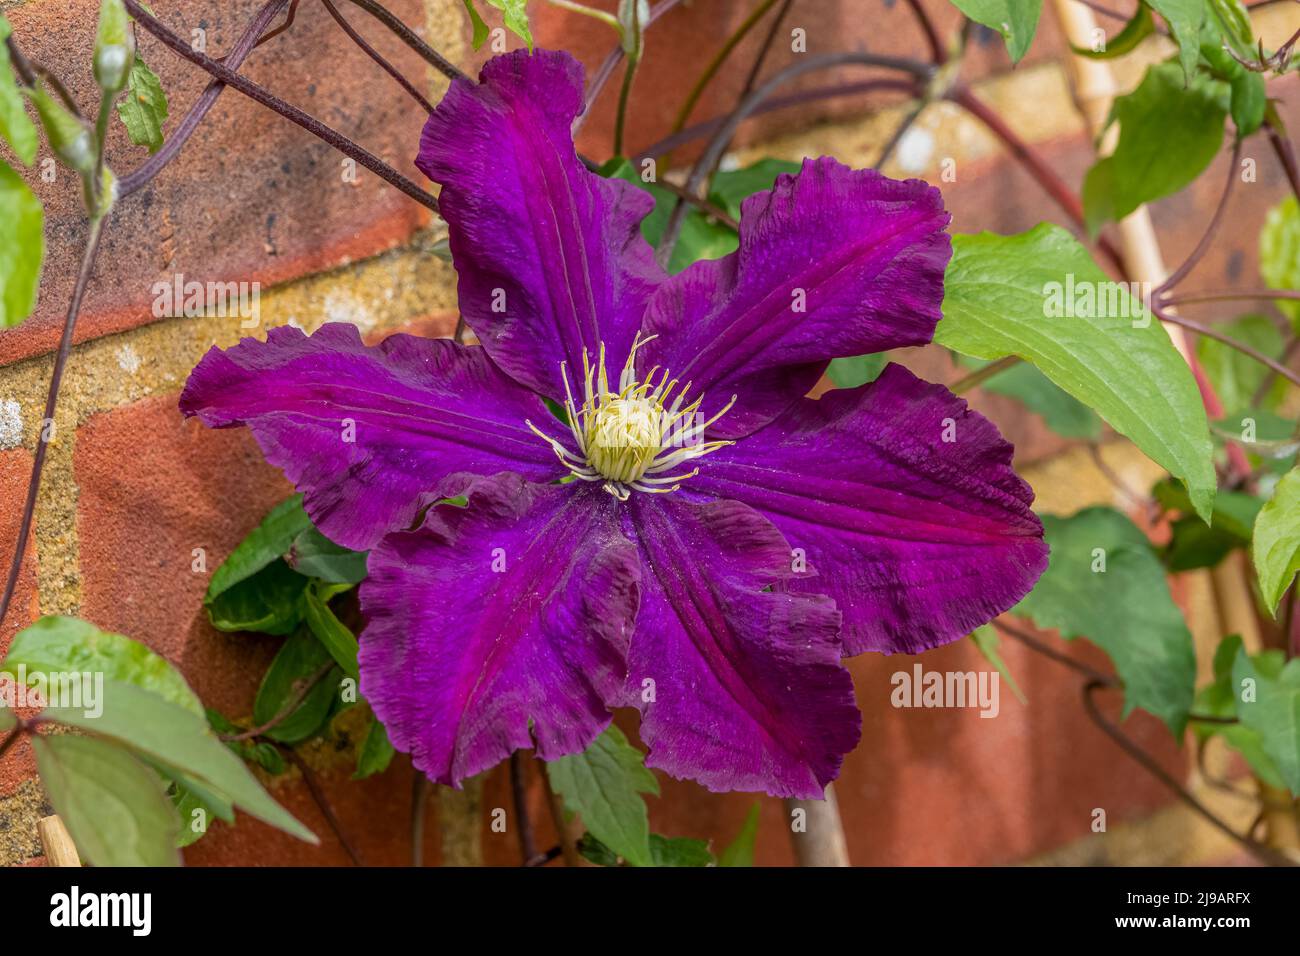 Dettaglio primo piano di clematis viola intenso Etoile Violet in fiore estate Foto Stock